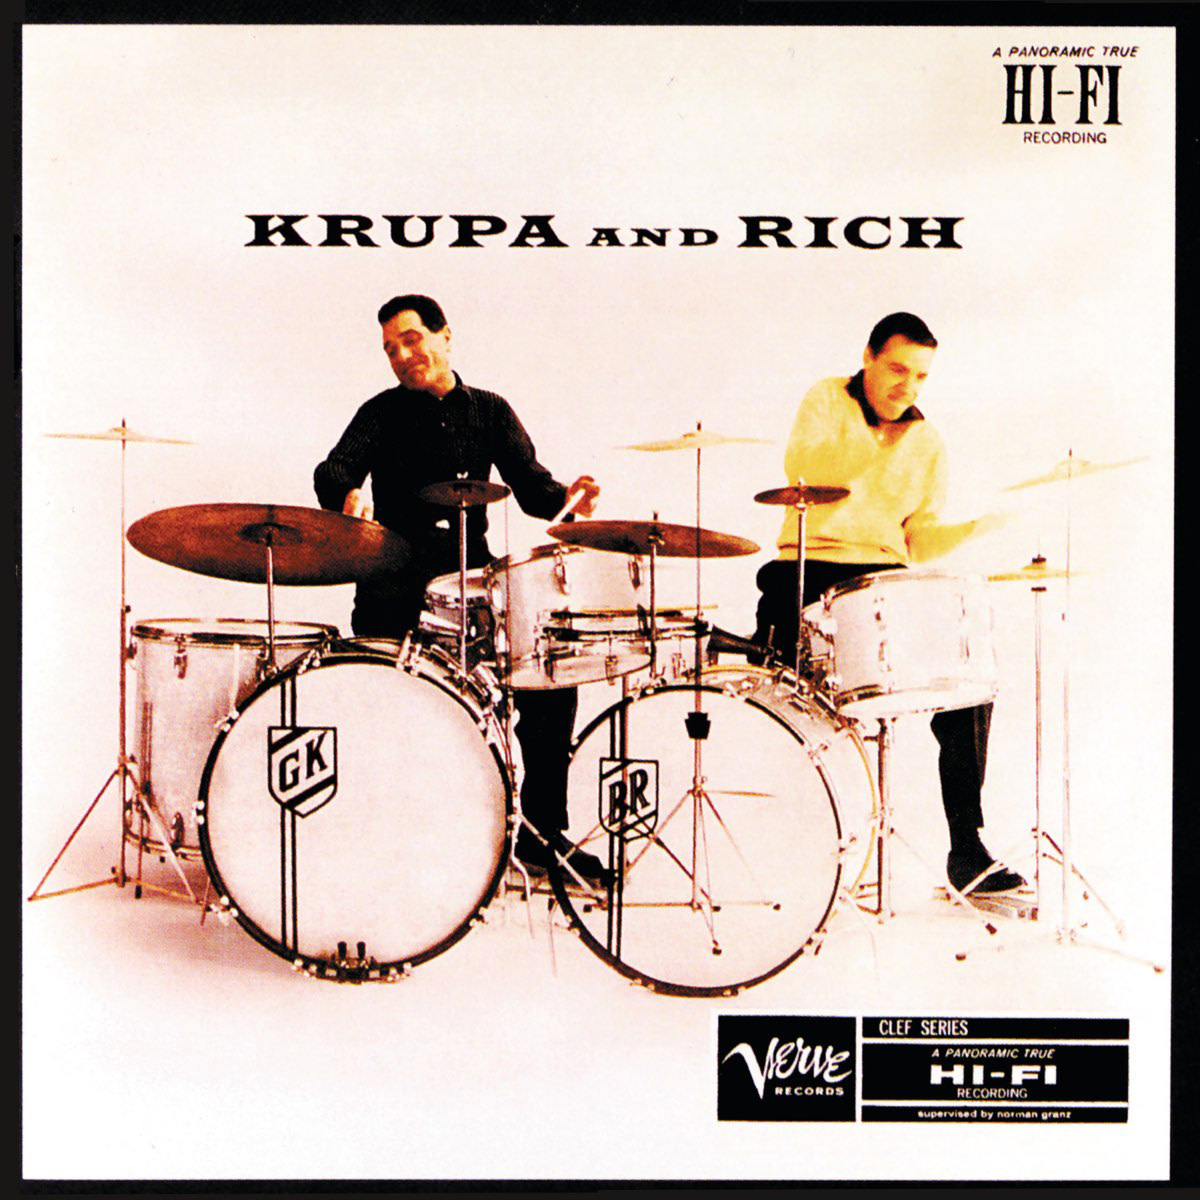 Krupa & Rich